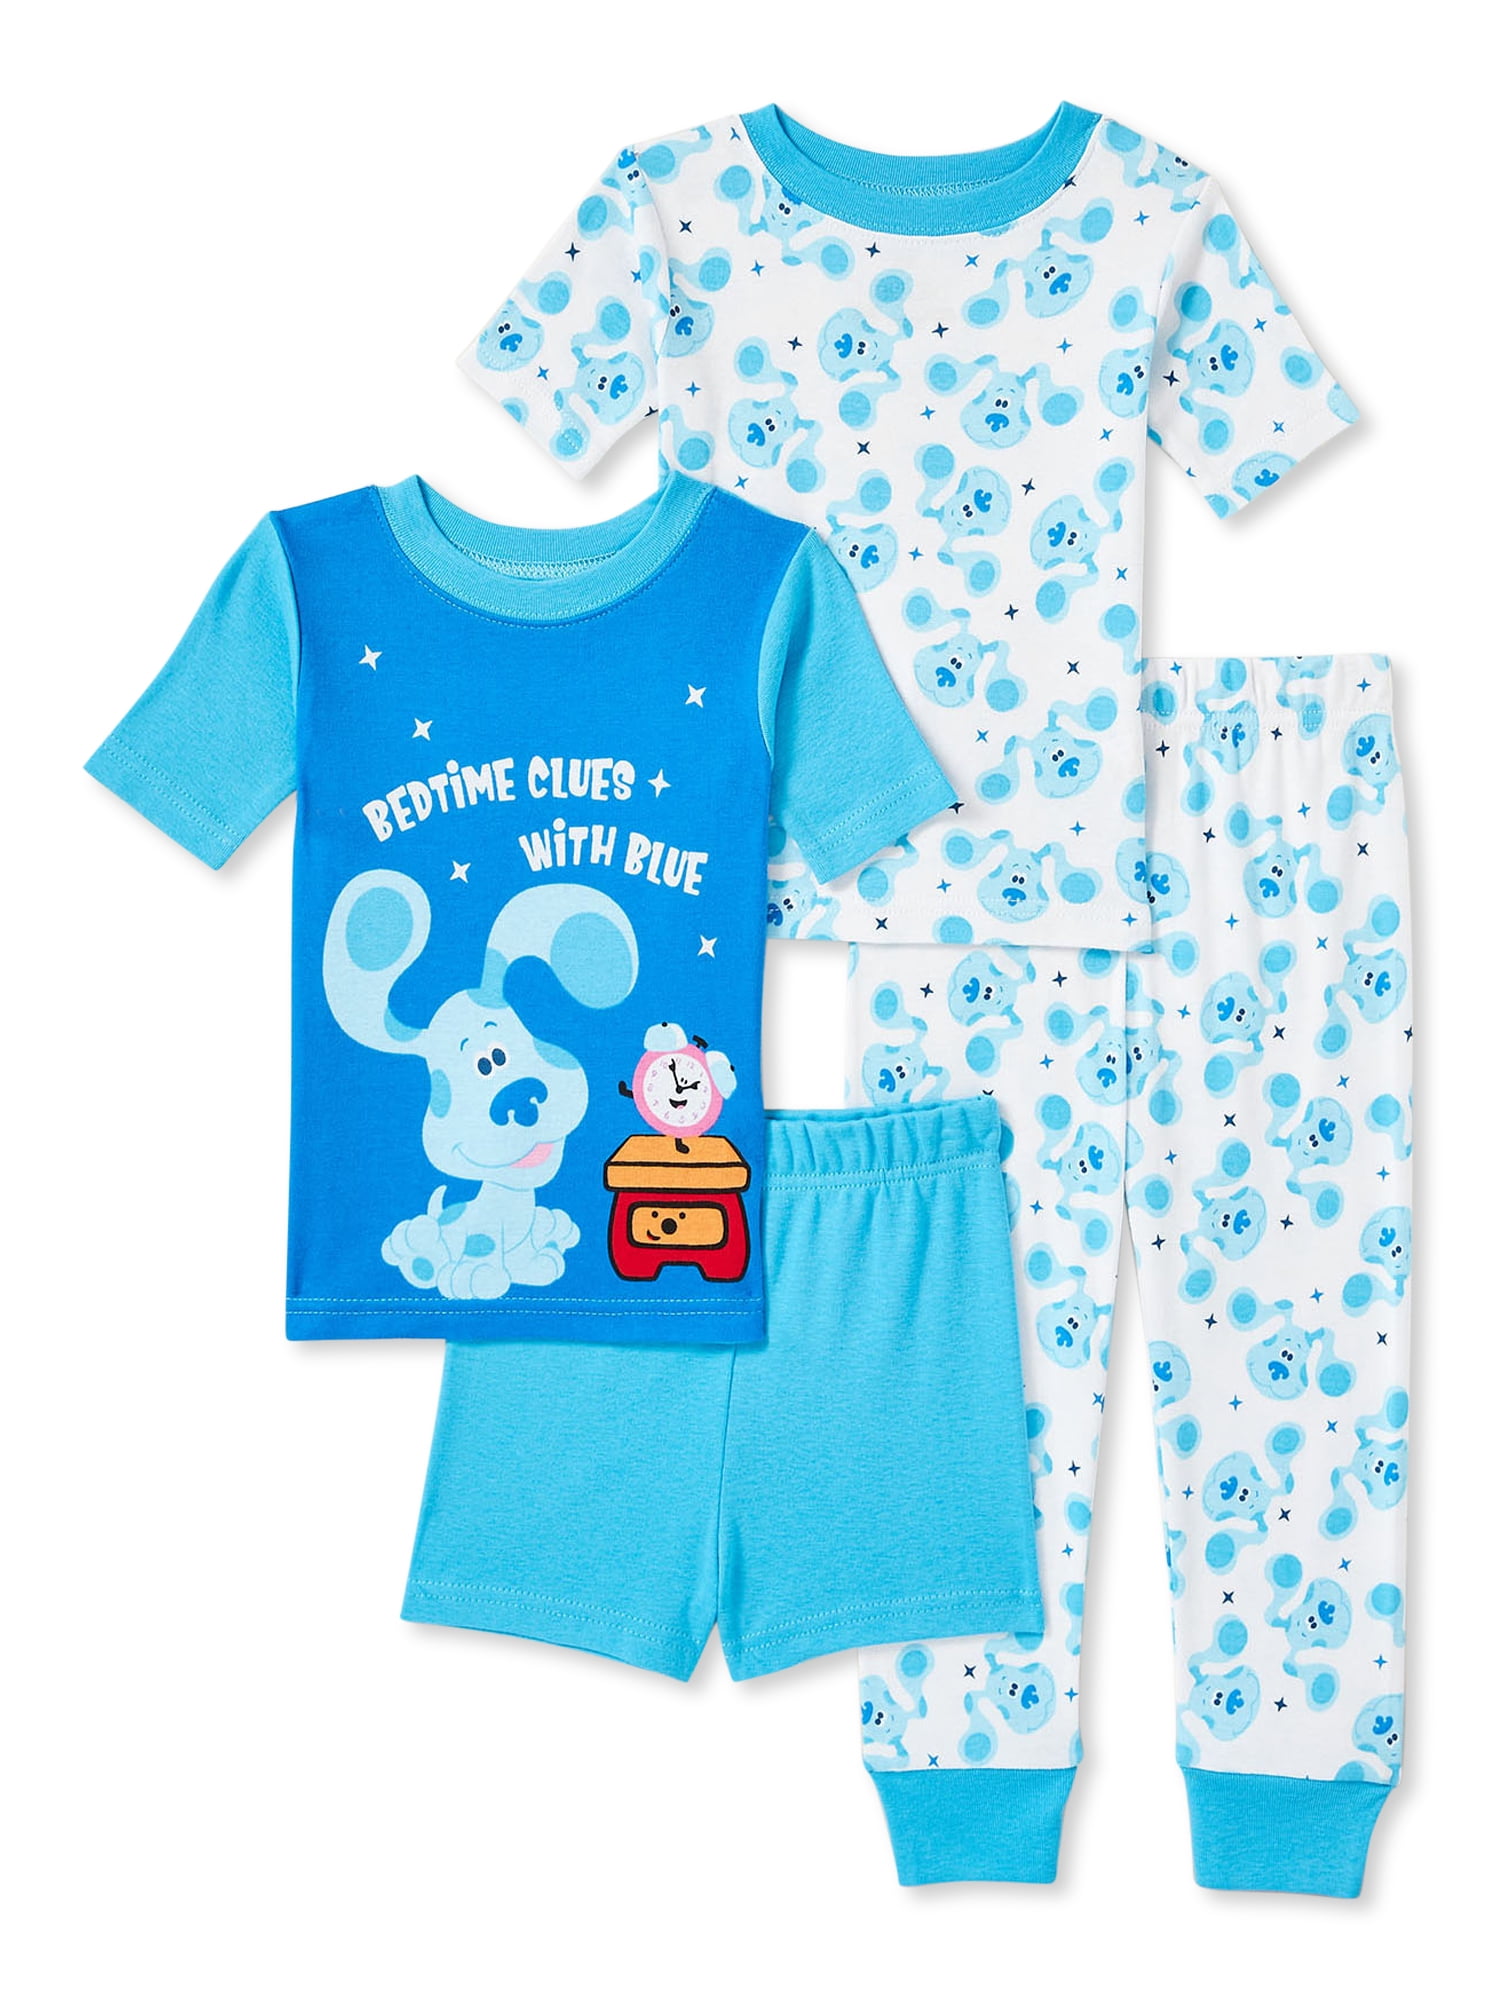 Blues Clues Pijamas para Niños